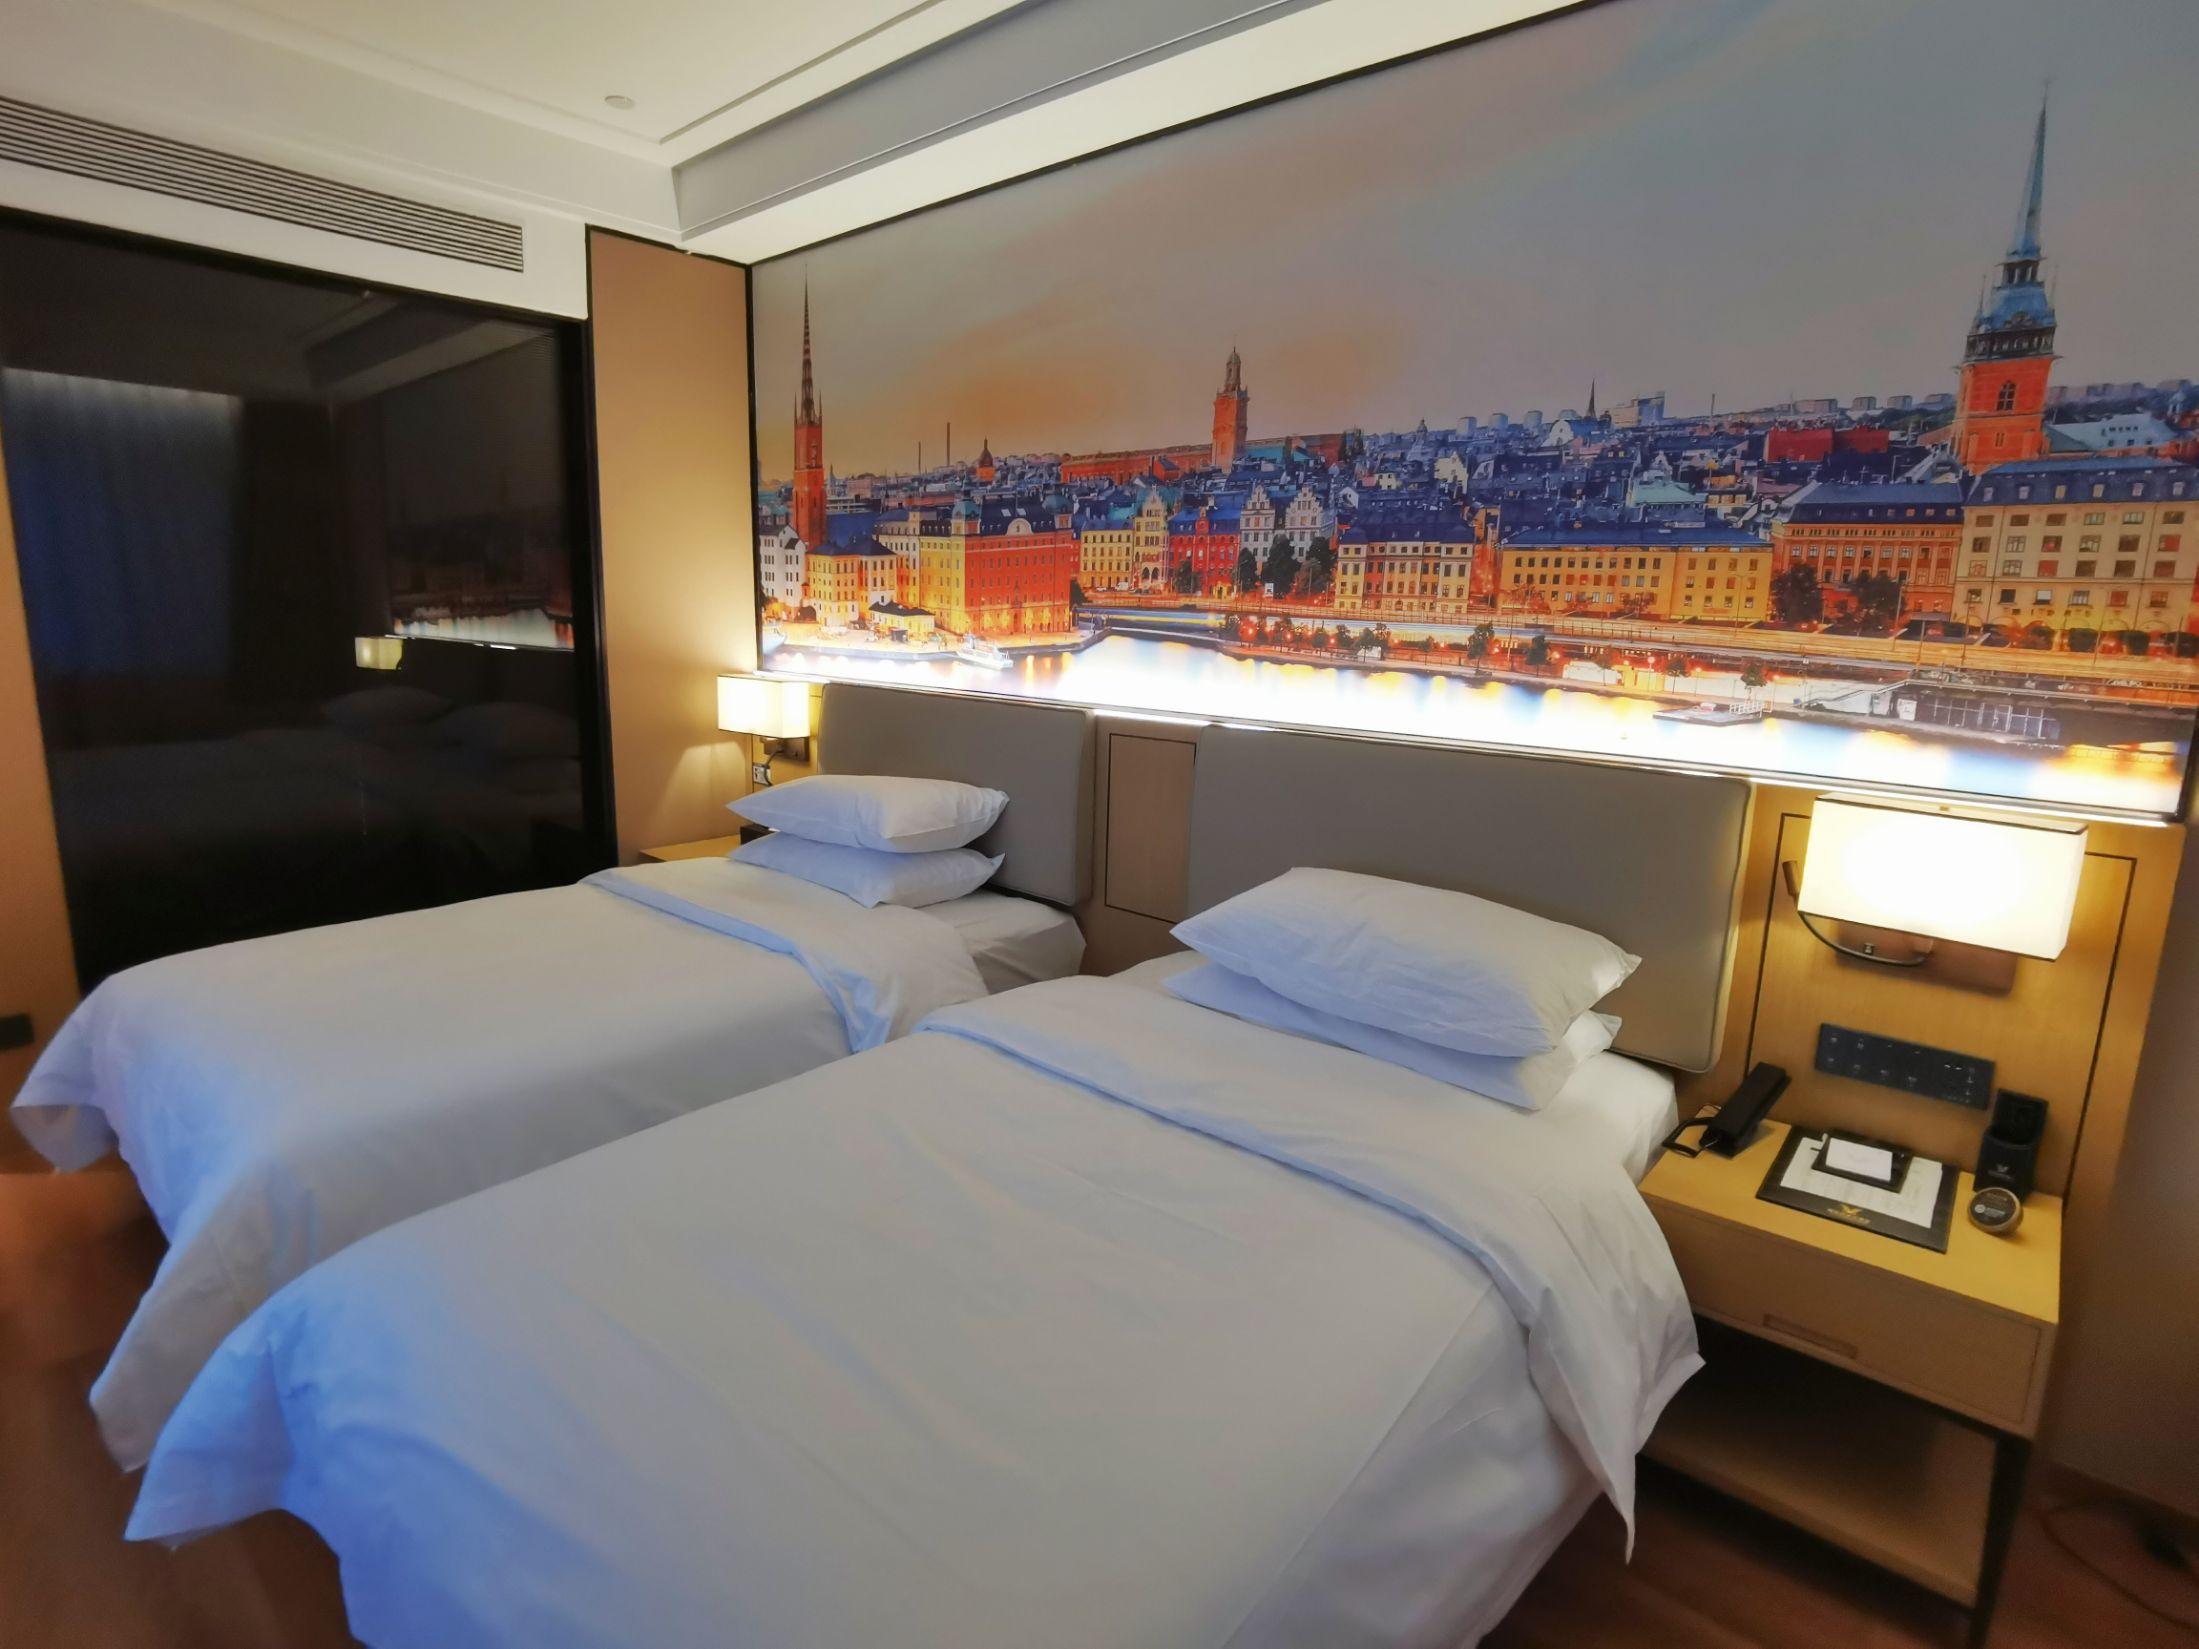 赵县维也纳酒店是我入住的性价比最高的酒店。价格便宜，服务人员礼貌周到，房间非常宽敞舒适，浴室有智能马